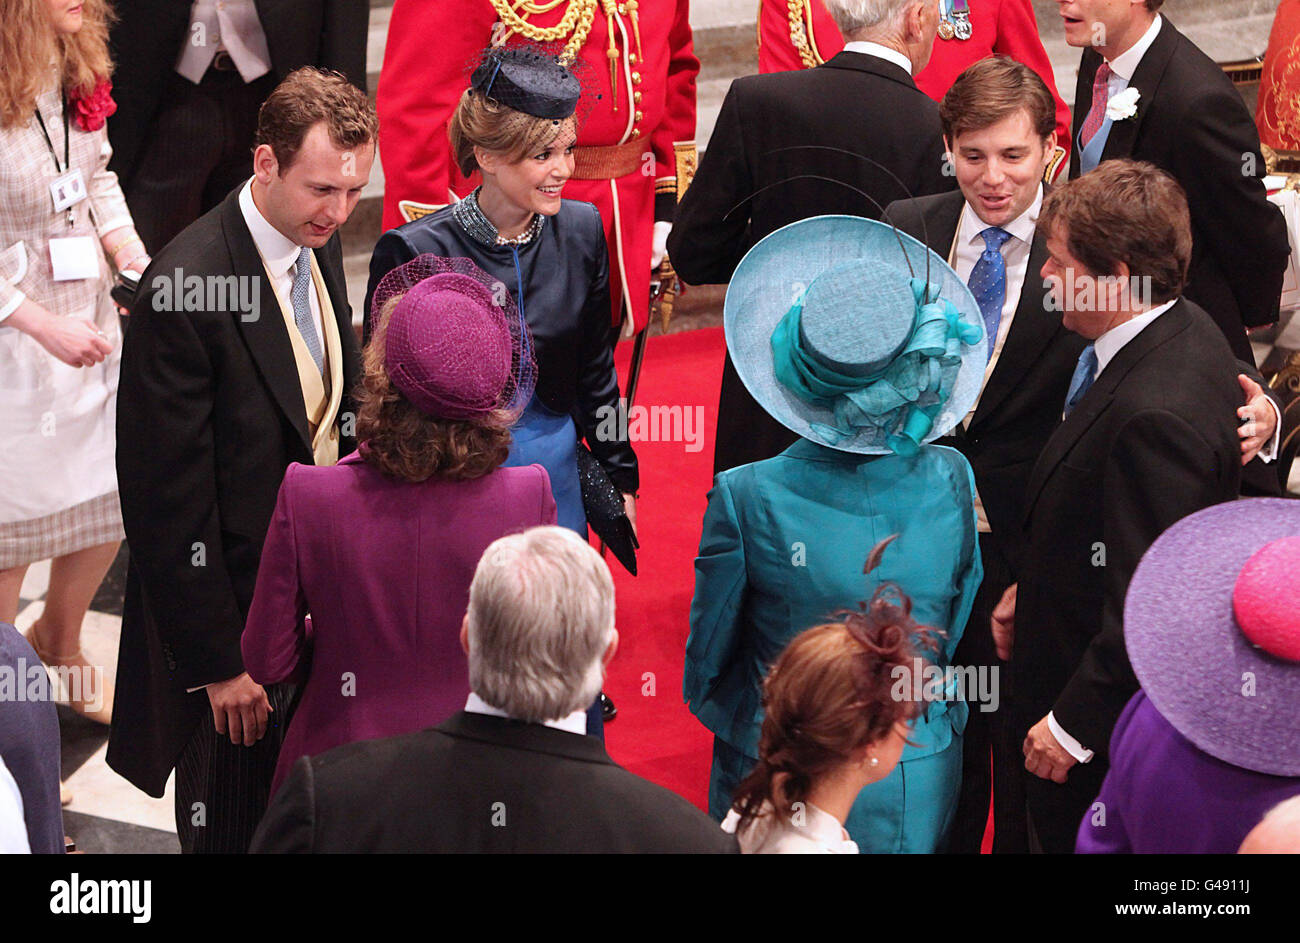 Les clients se mêlent à l'abbaye de Westminster à Londres où le Prince William et Kate Middleton se marieront plus tard aujourd'hui. Banque D'Images